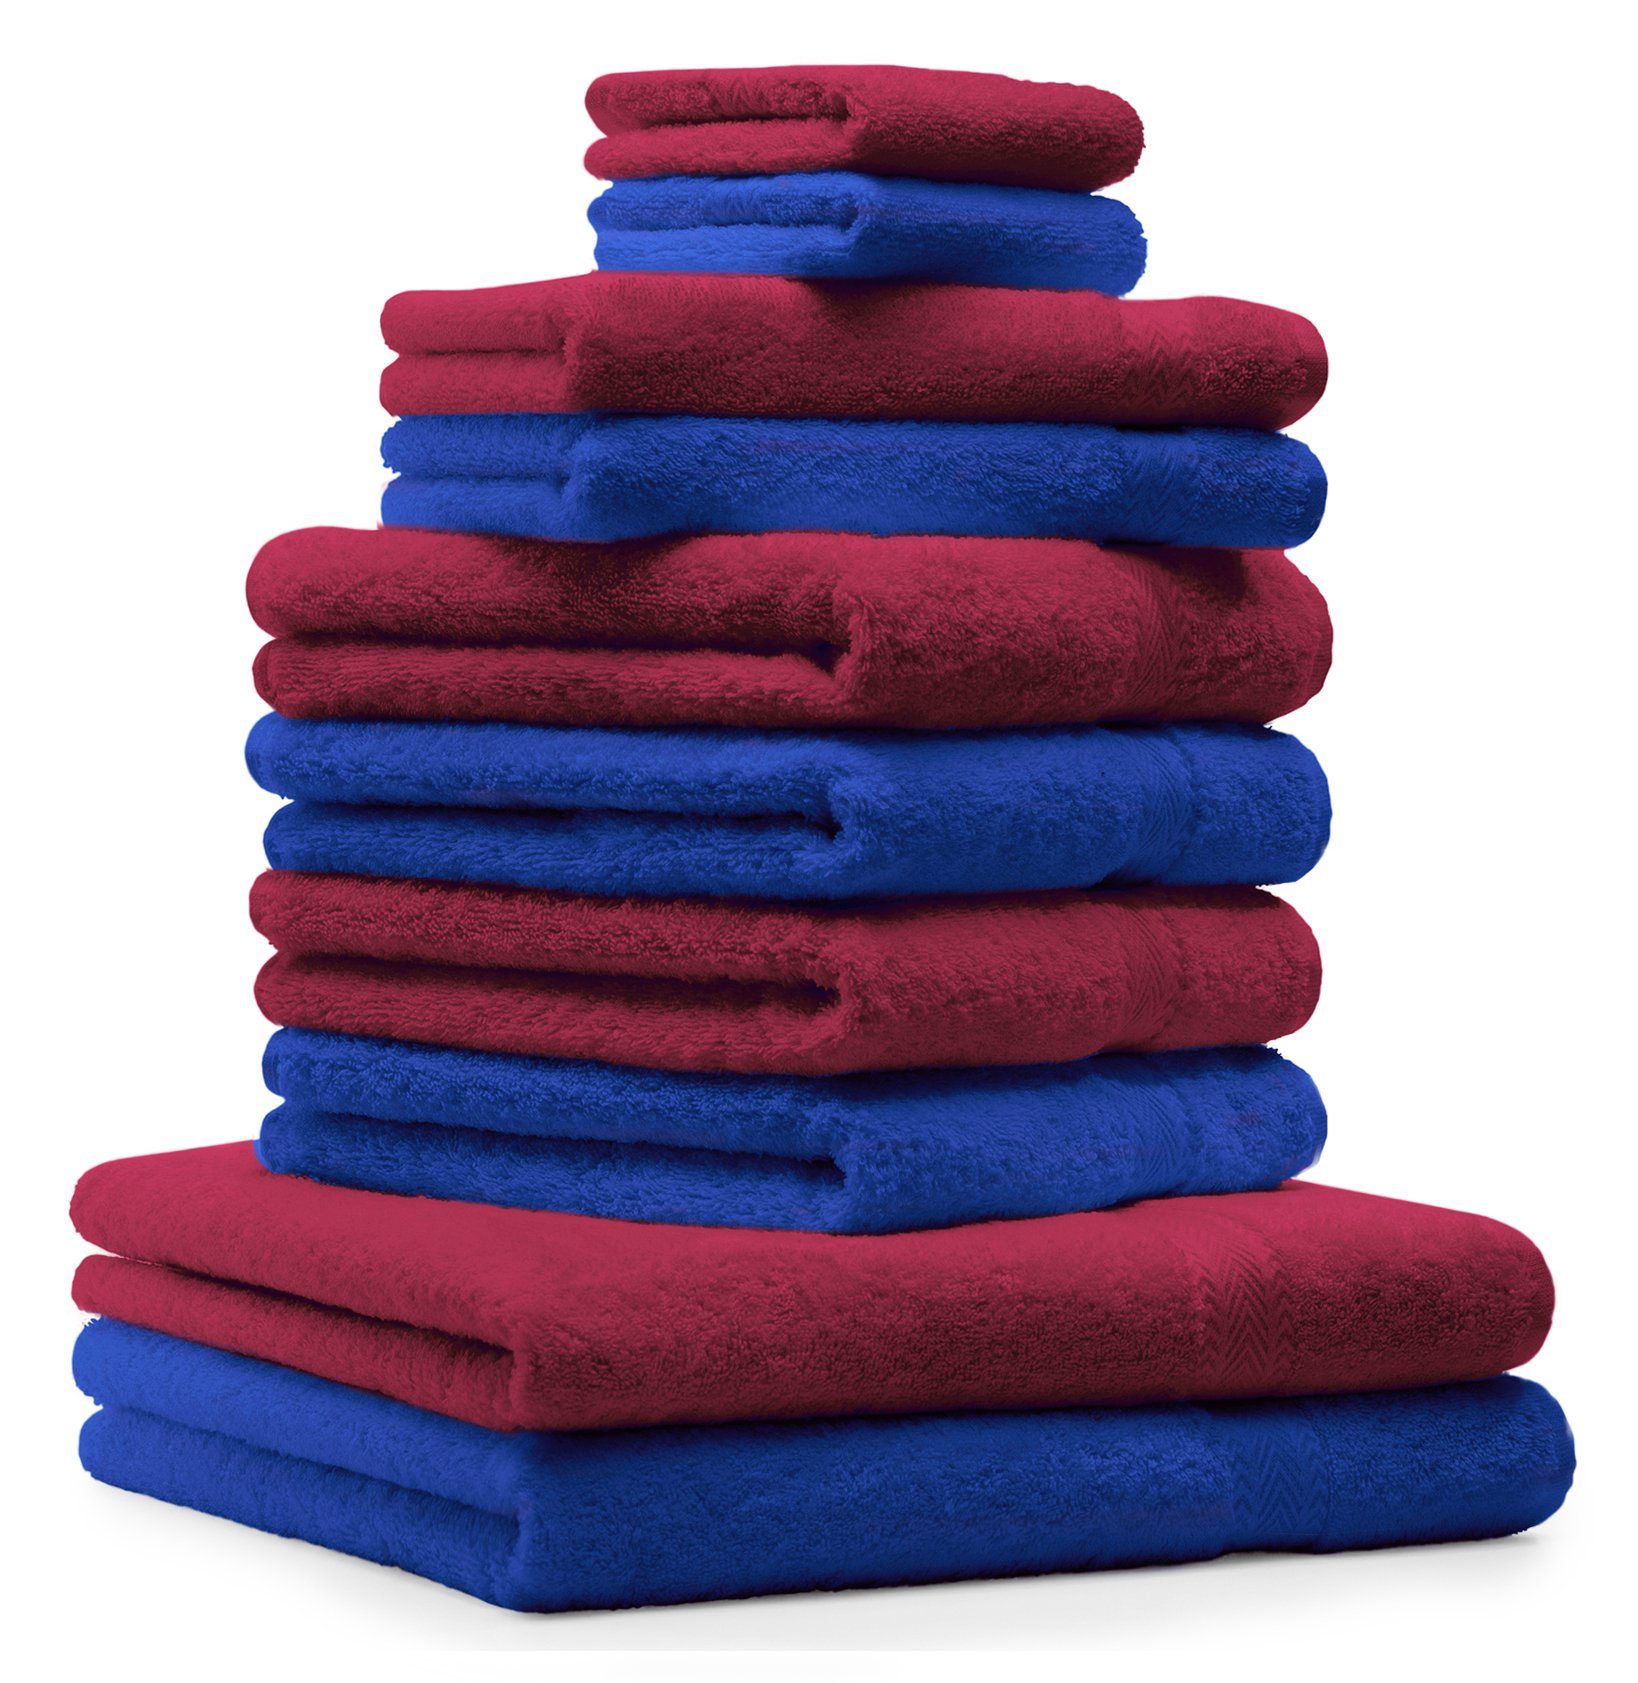 Betz Handtuch Set 10-TLG. Handtuch-Set Premium 100% Baumwolle 2 Duschtücher 4 Handtücher 2 Gästetücher 2 Waschhandschuhe Farbe Royal Blau & Dunkel Rot, 100% Baumwolle, (10-tlg)